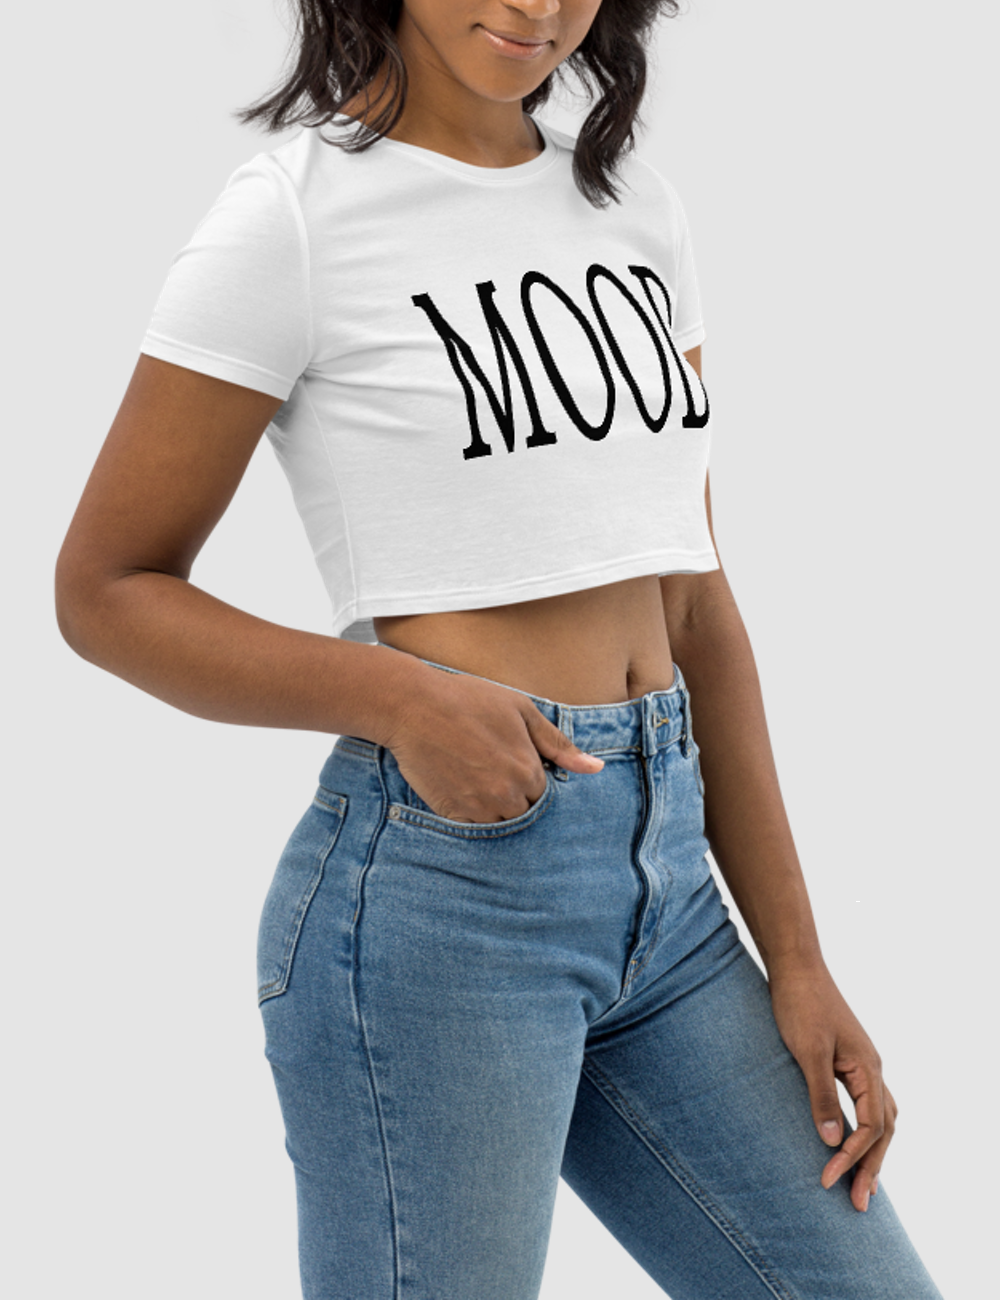 Mood | Women's Crop Top T-Shirt OniTakai